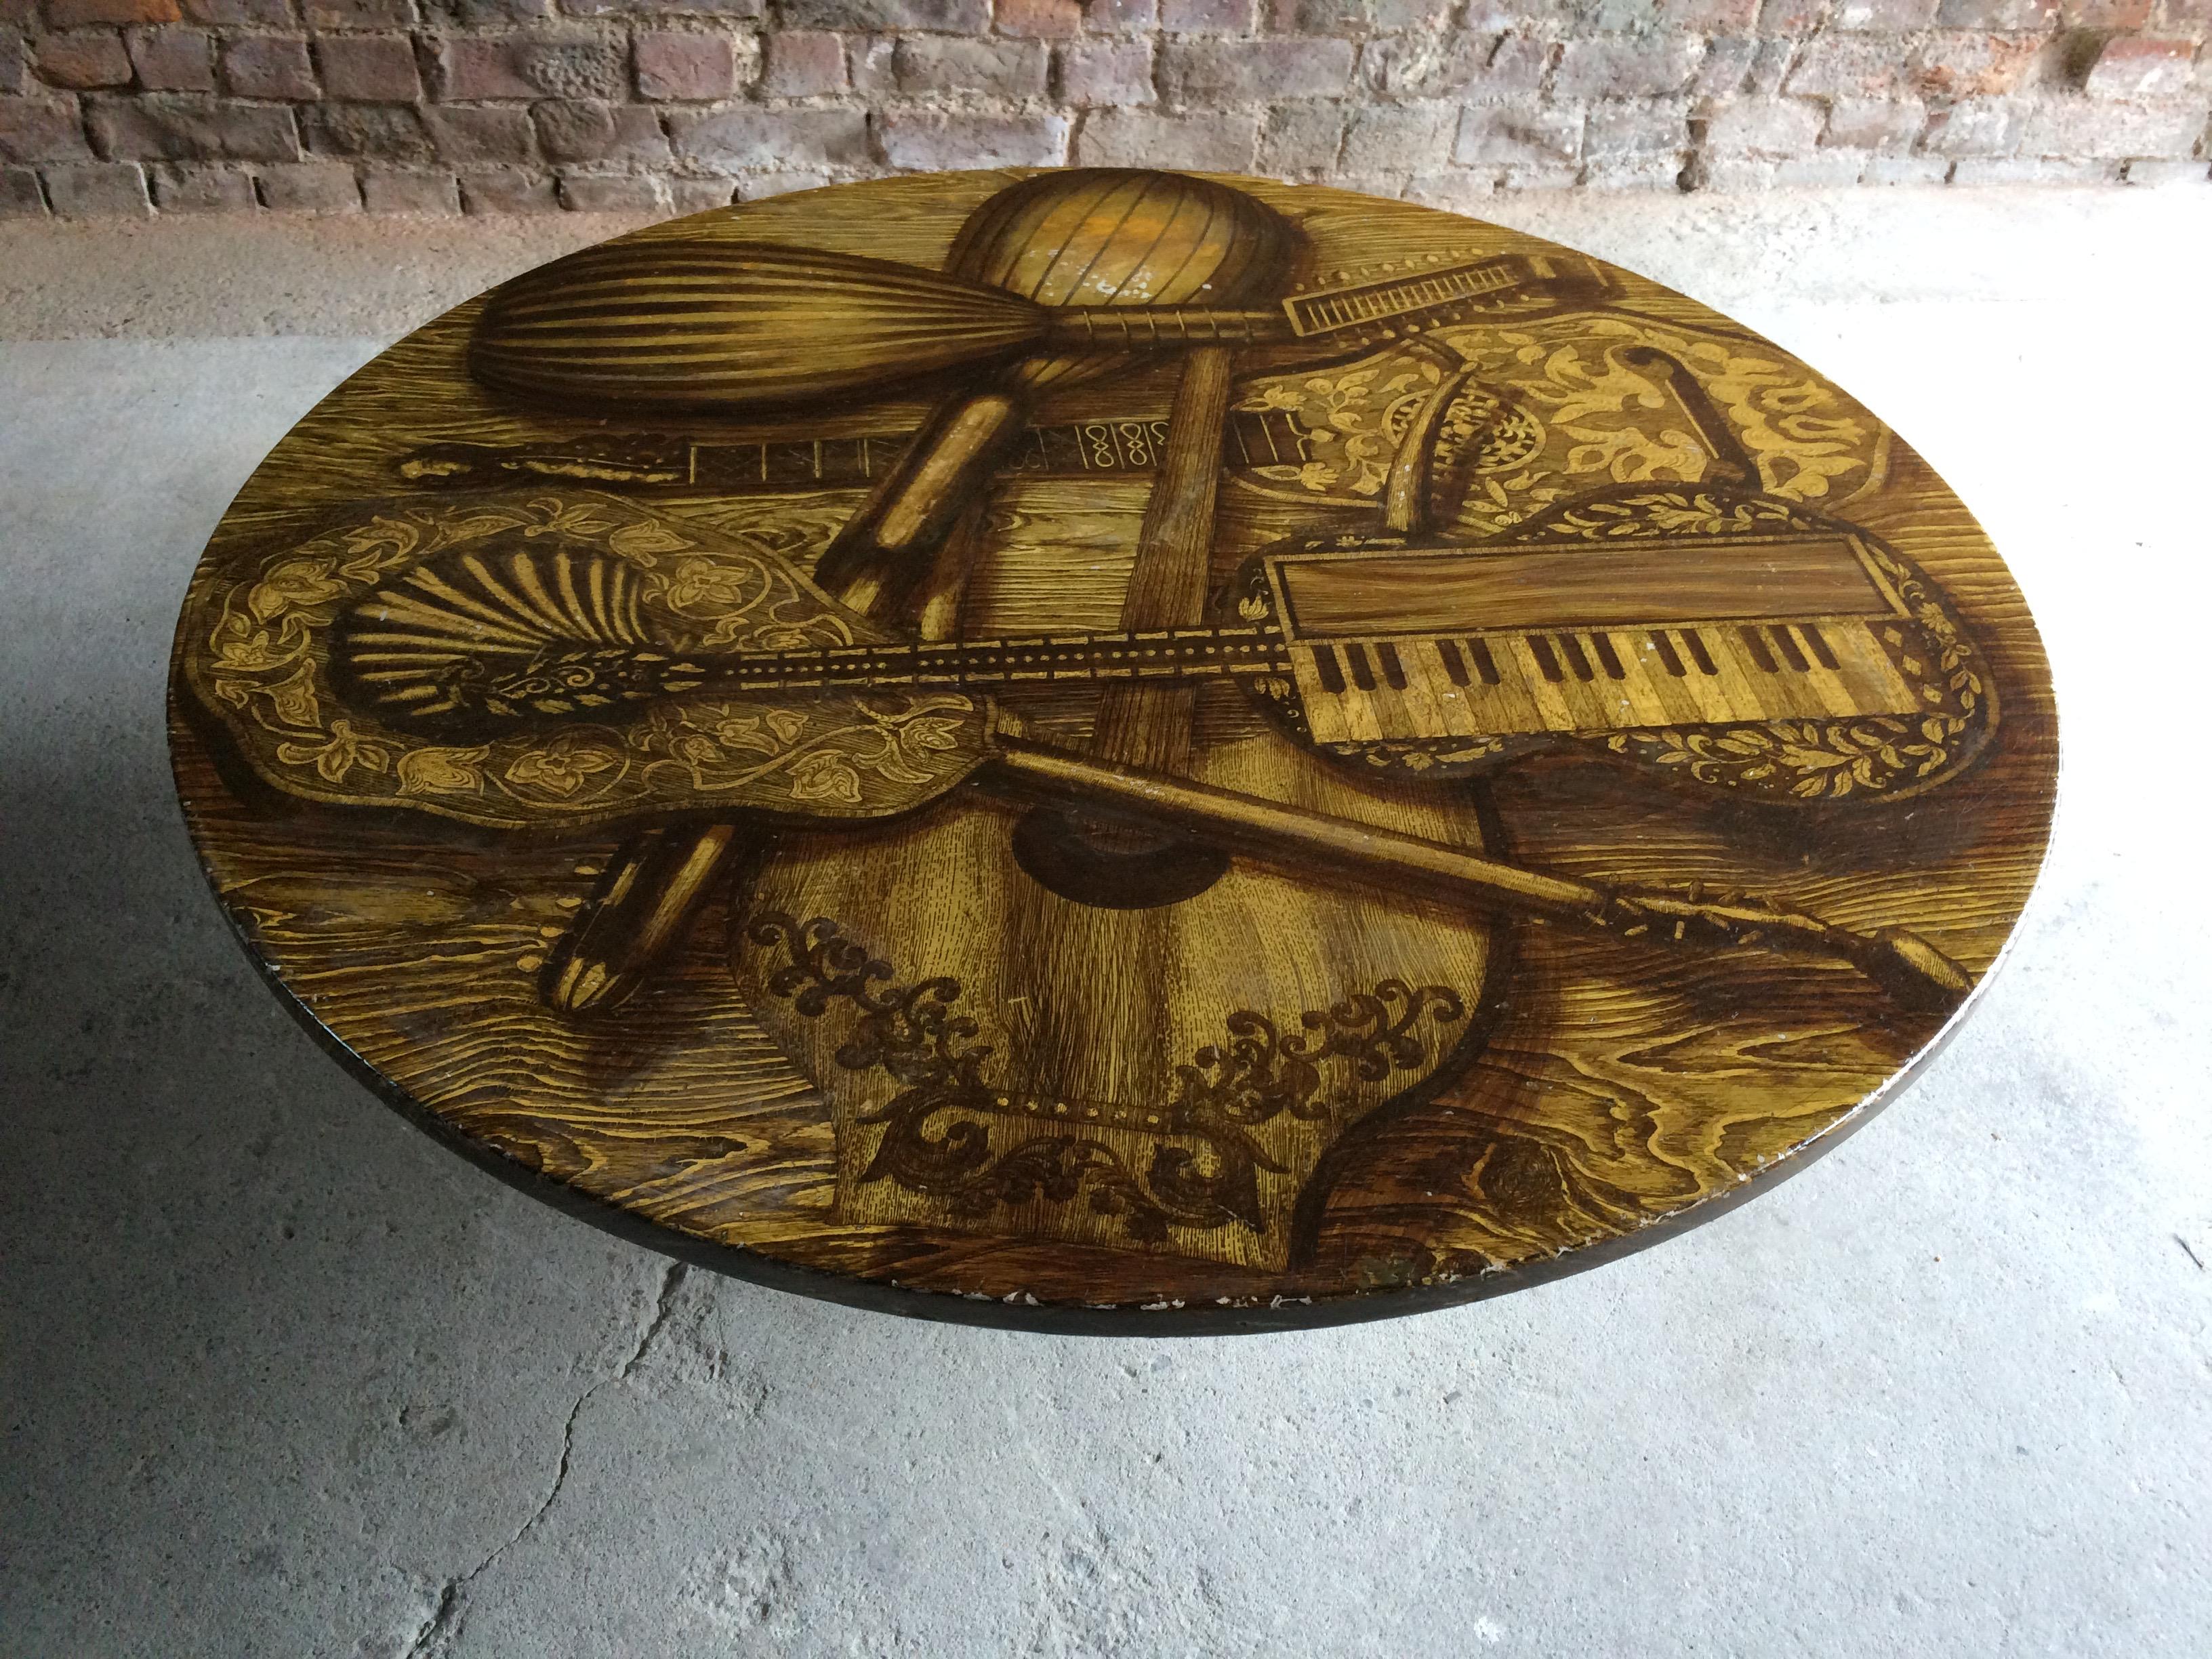 Piero Fornasetti Strumenti Musicali Coffee Table circa 1960s Musical Instruments 1